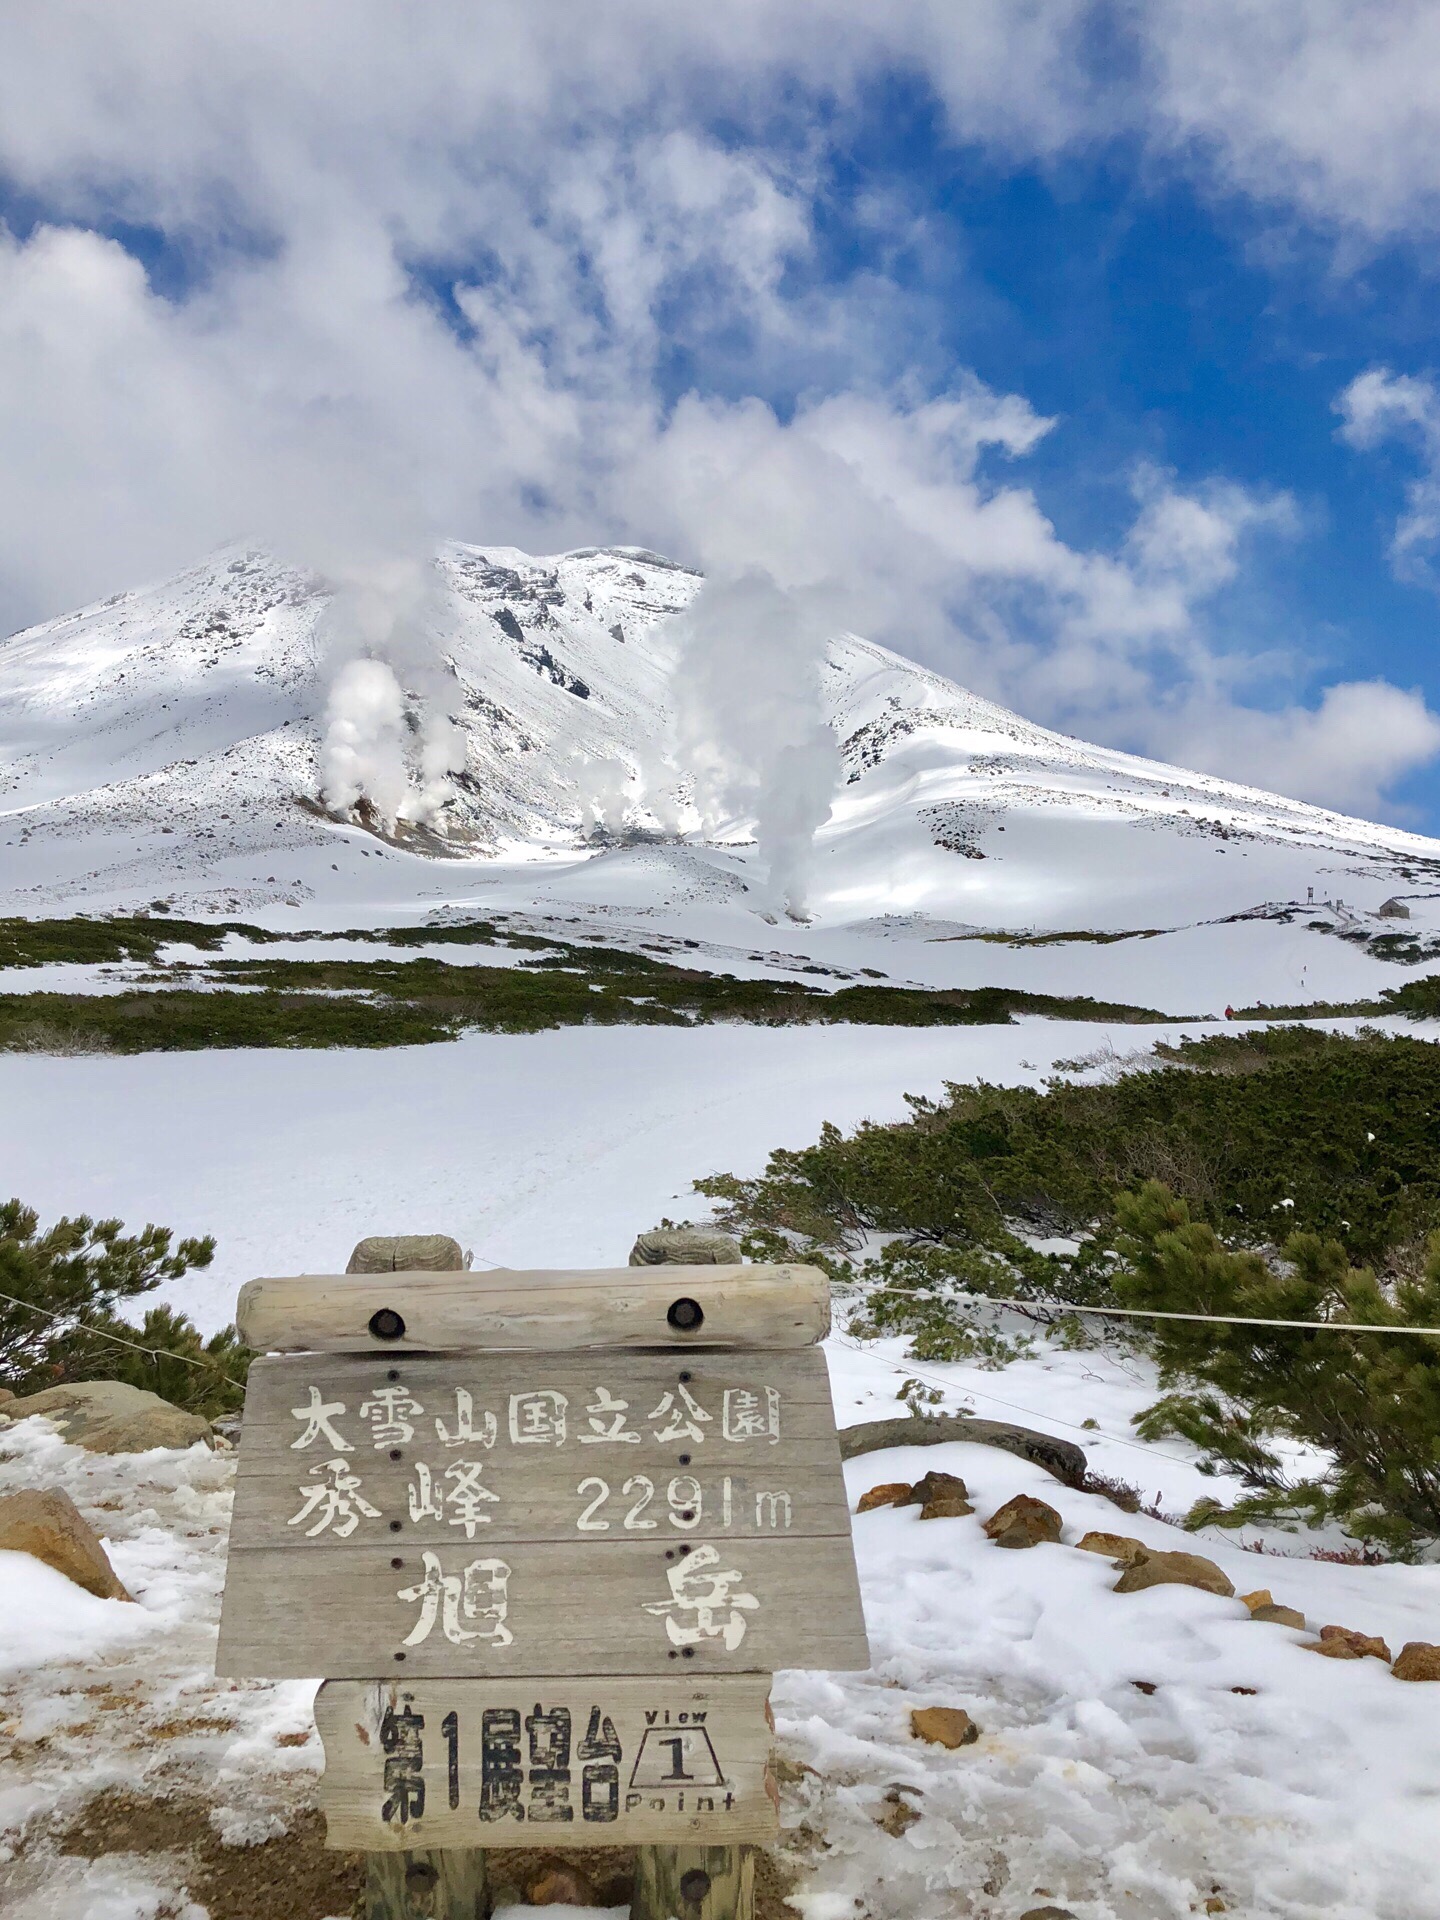 旭岳，是北海道最高的 活火山，高2291米。冬季是滑雪者的天堂。我是春末夏初来到，感到最特别的是雪山